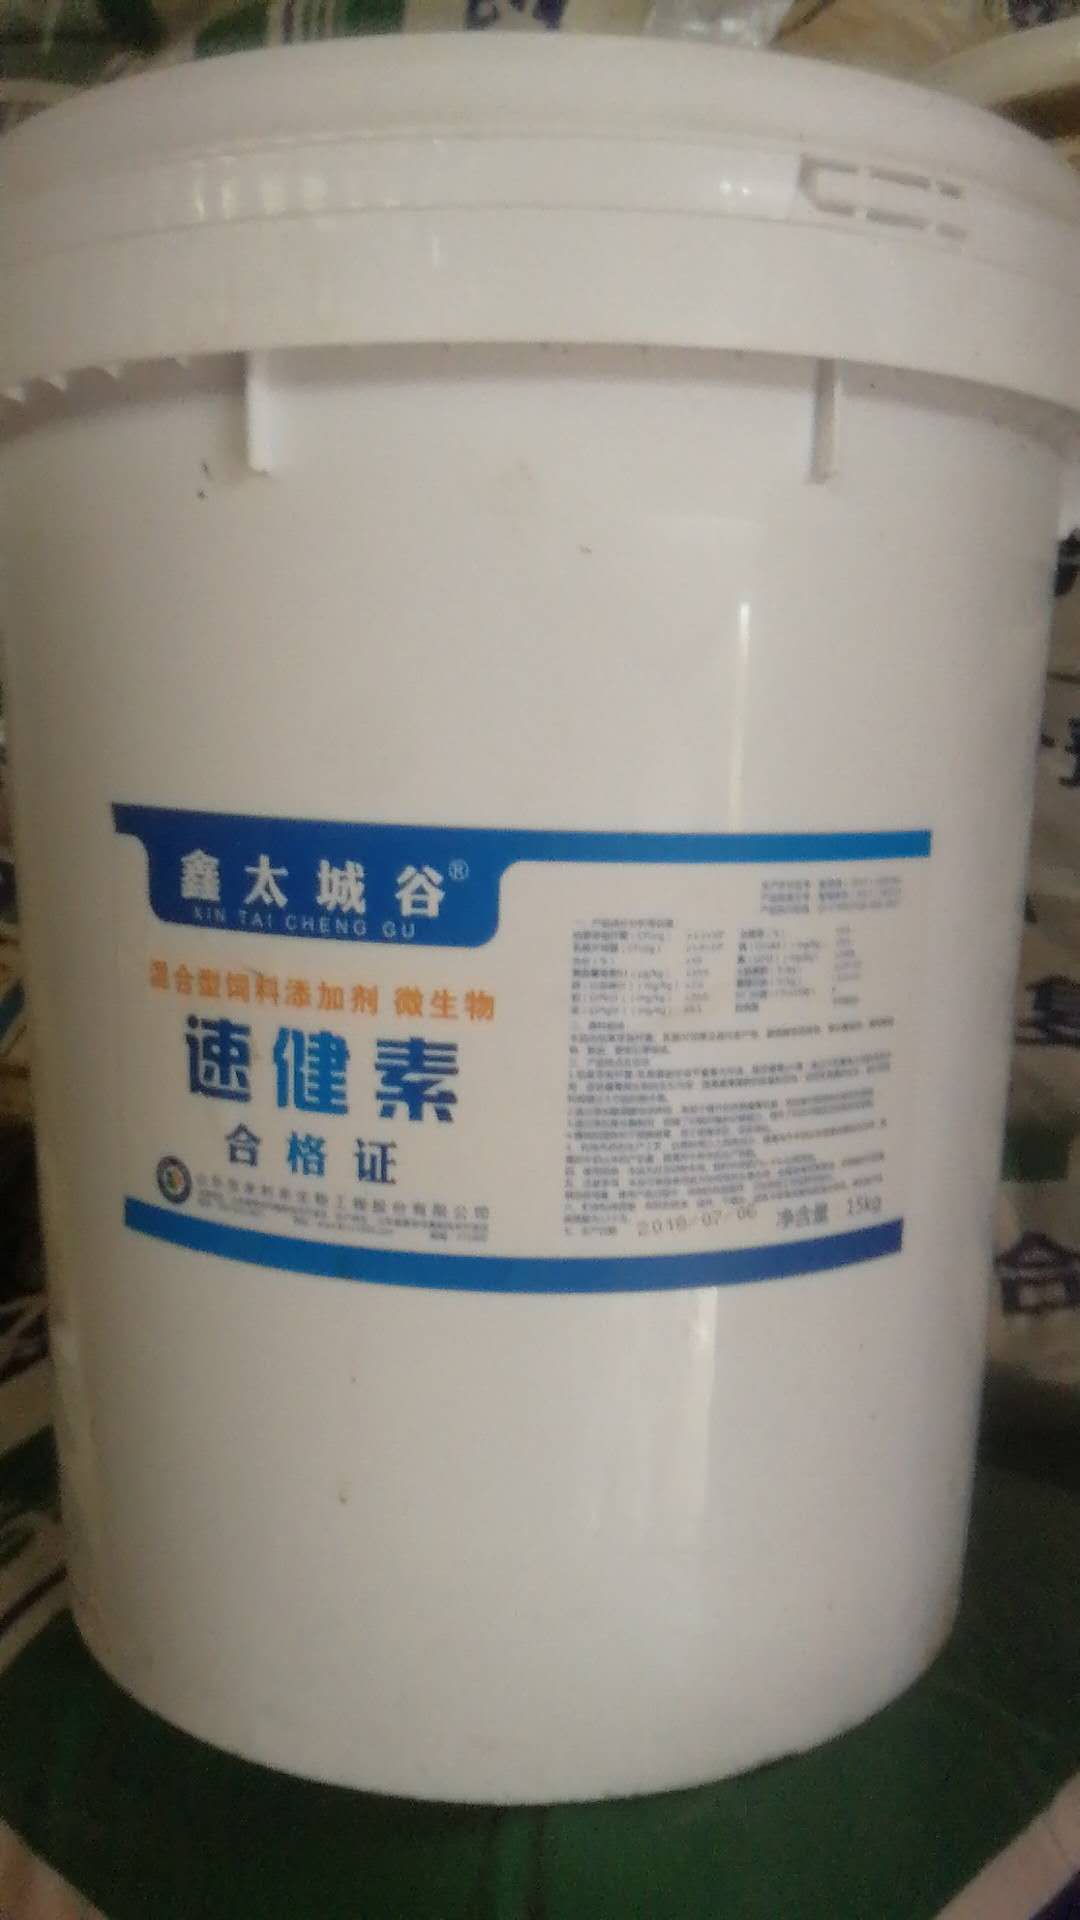 北京鑫太城谷微生态型饲料添加剂速键素